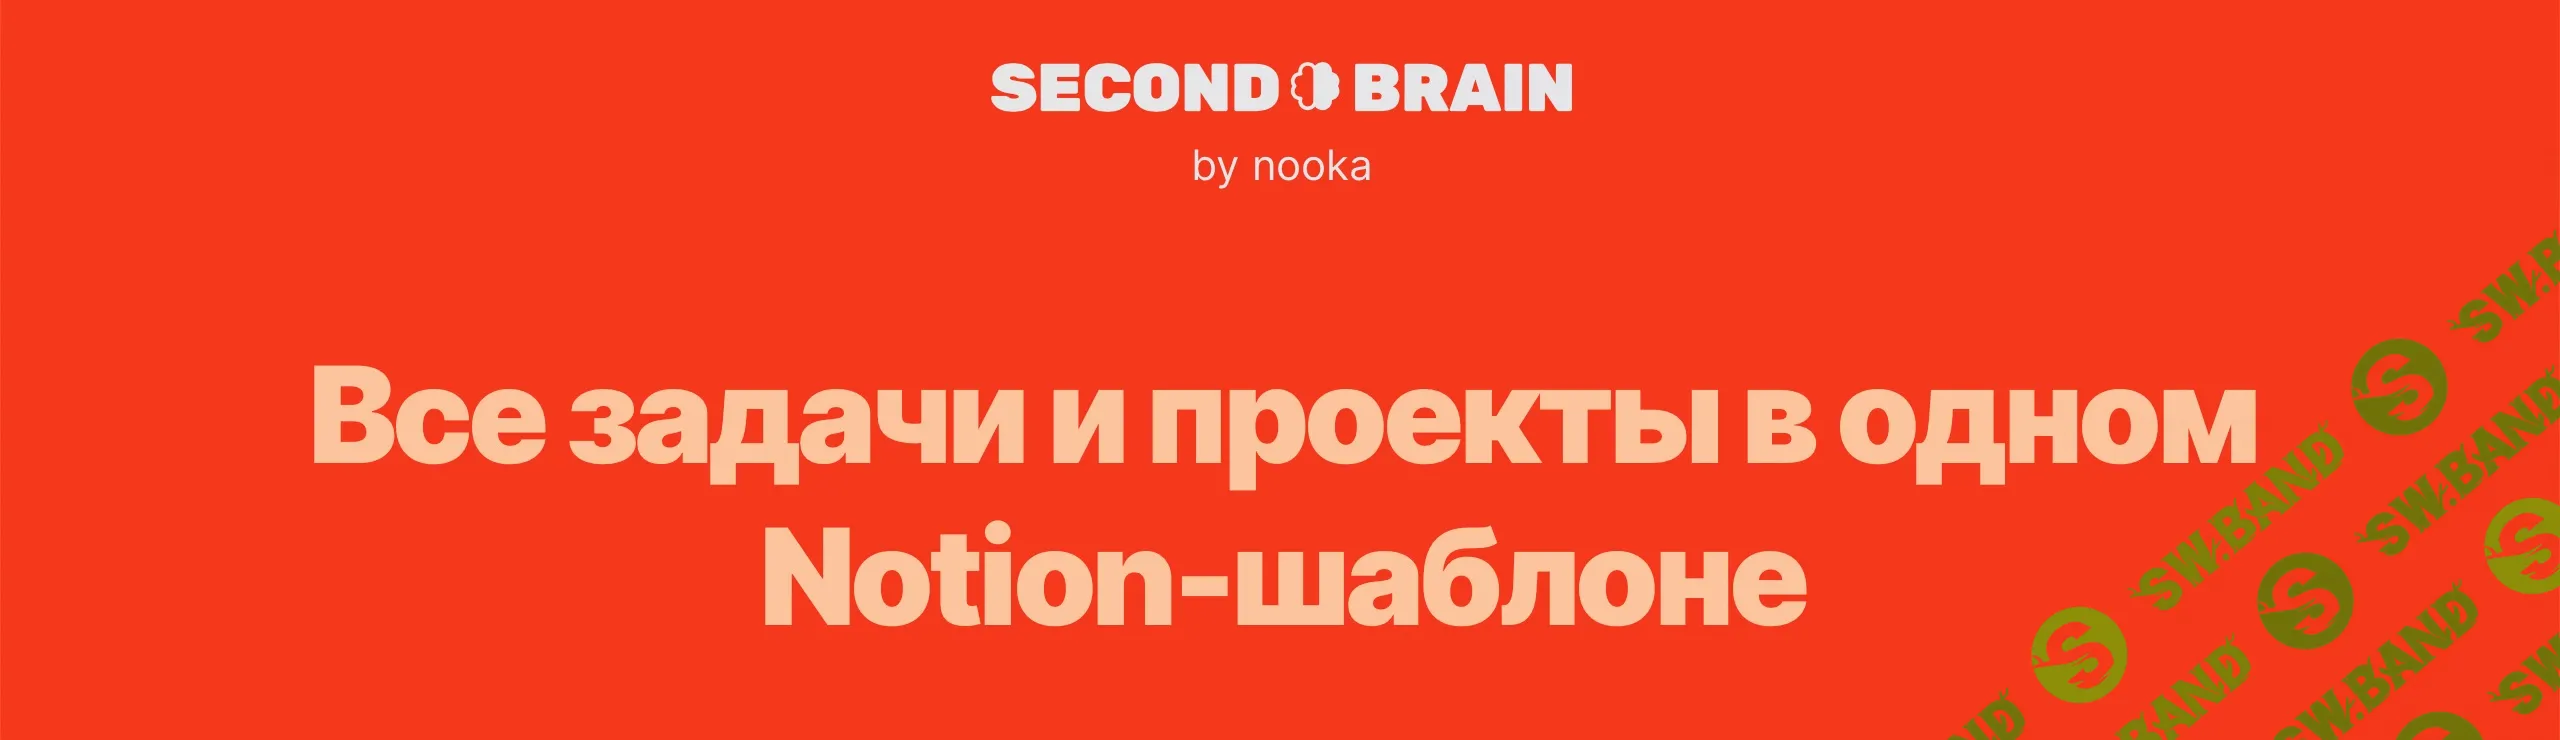 [Notion] Second Brain by nooka [nooka] [Повтор-2] .